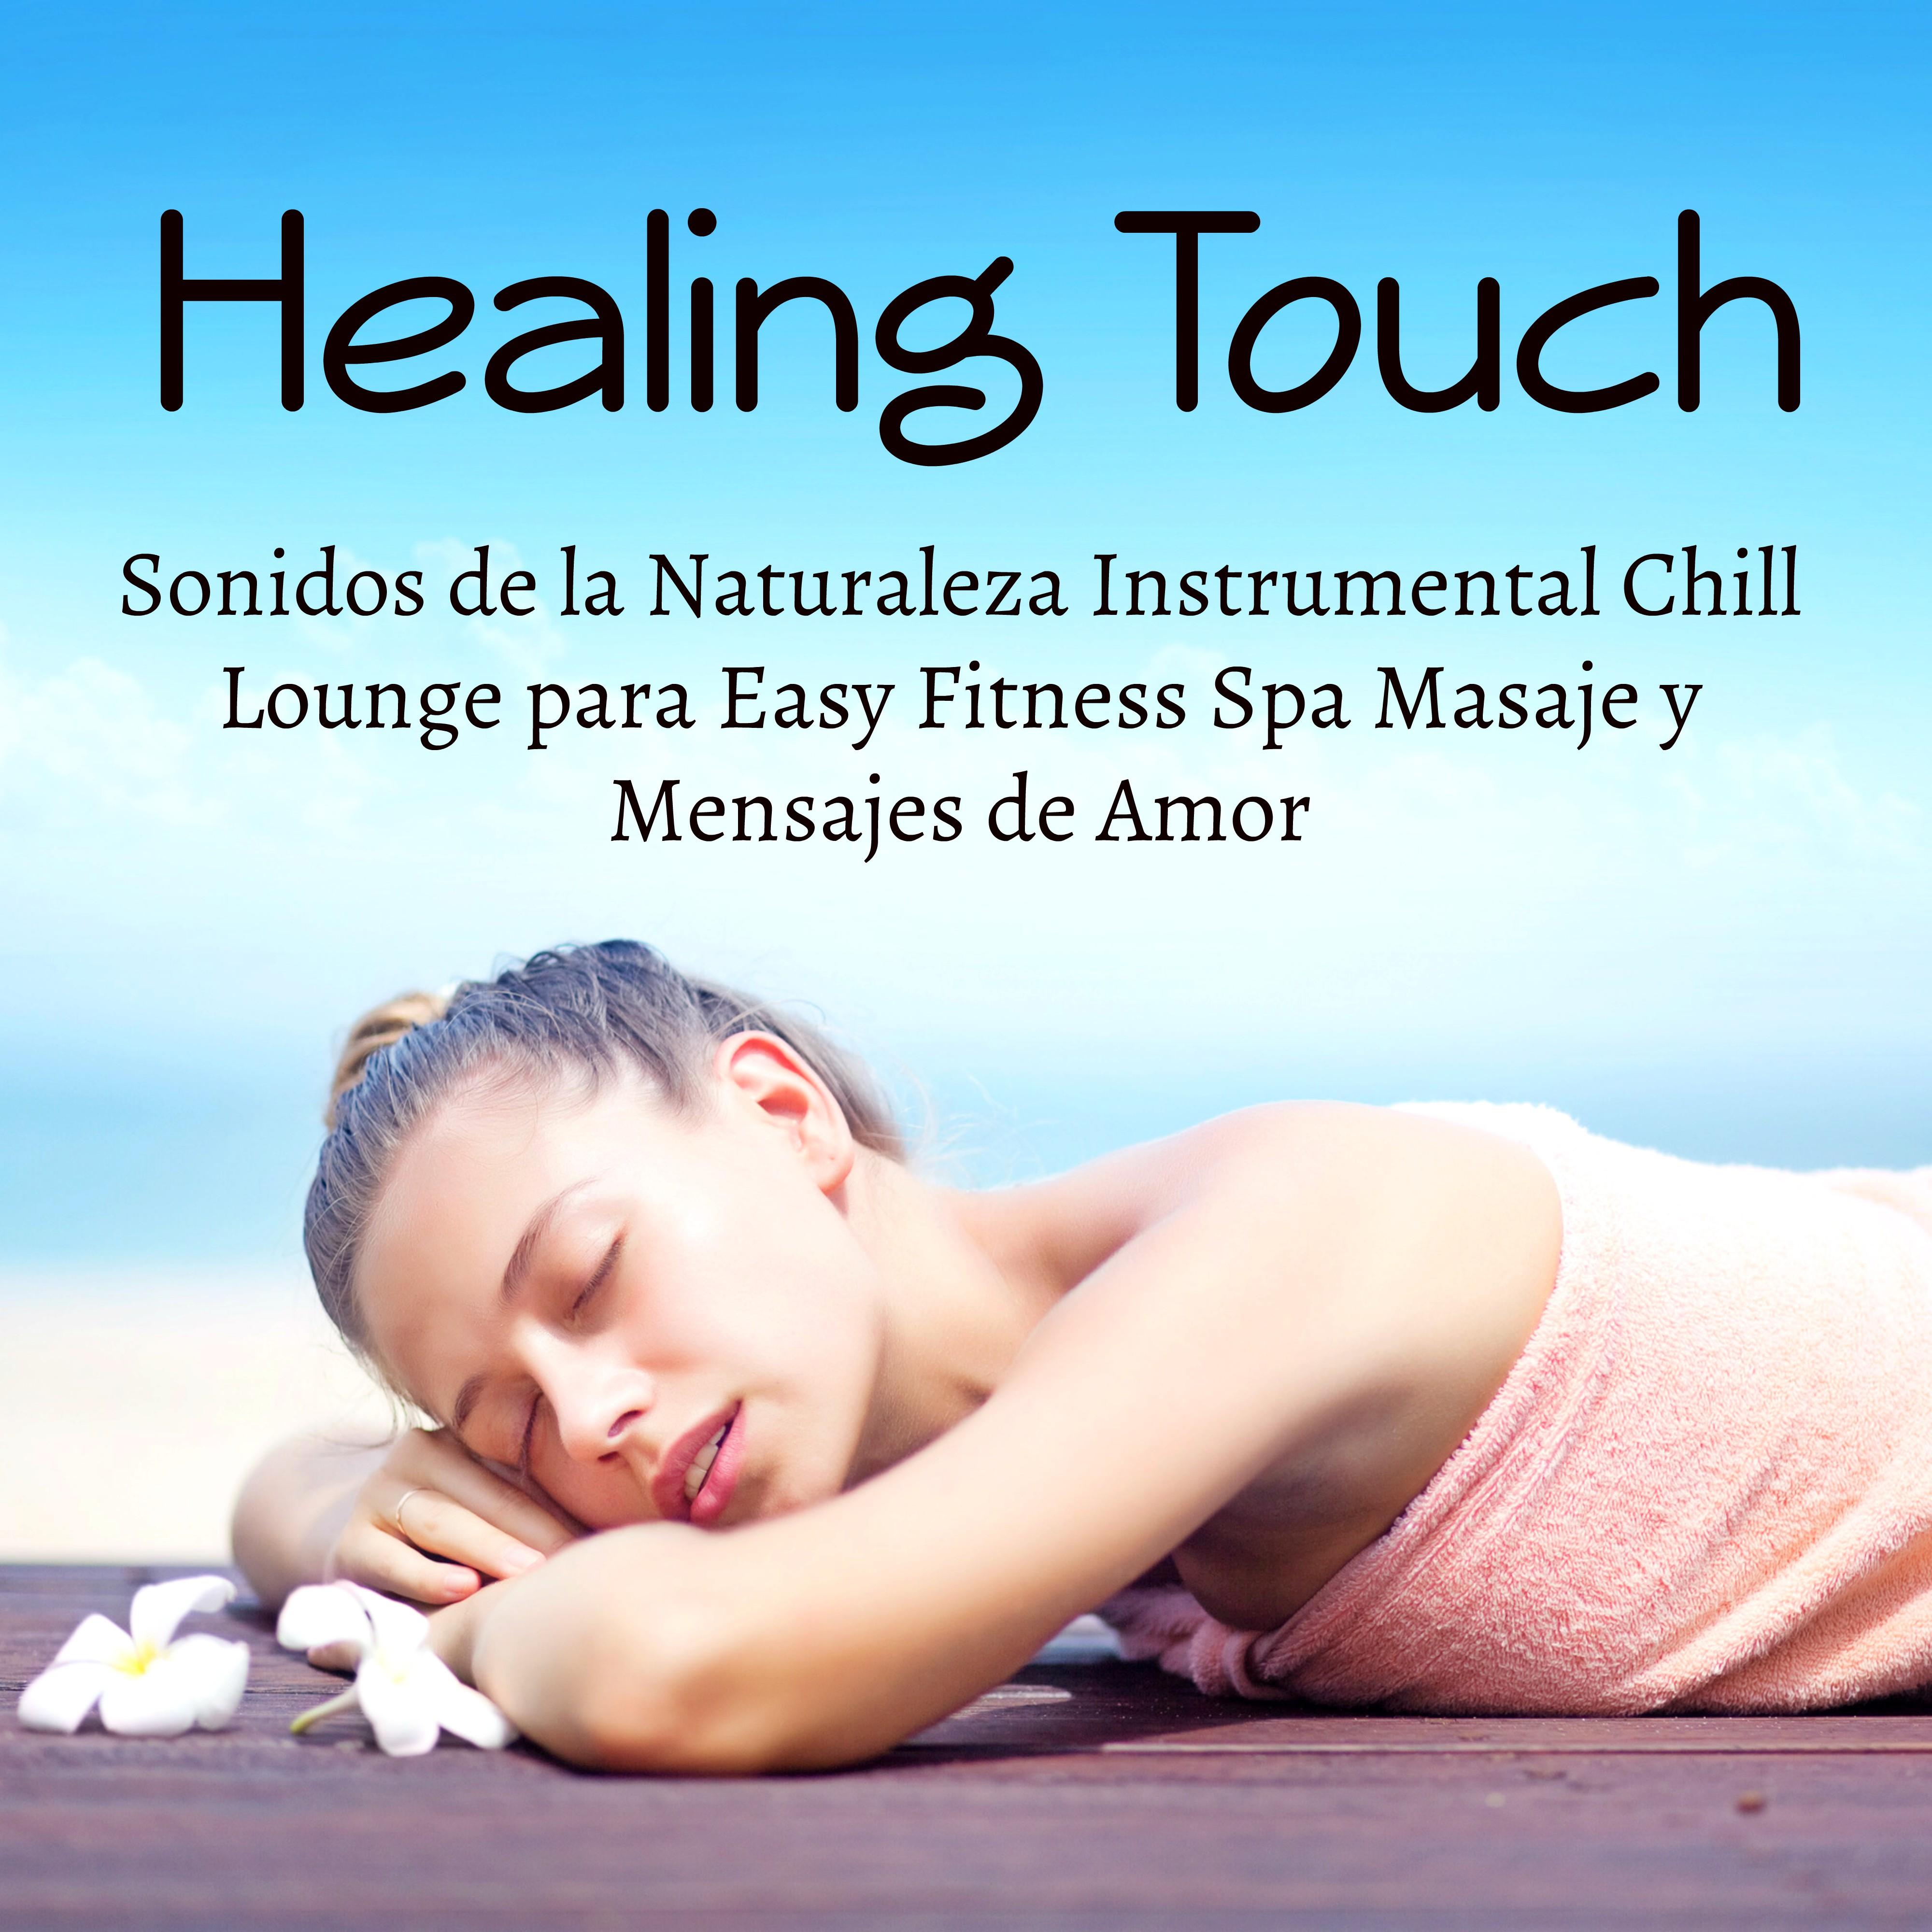 Healing Touch - Sonidos de la Naturaleza Instrumental Chill Lounge para Easy Fitness Spa Masaje y Mensajes de Amor